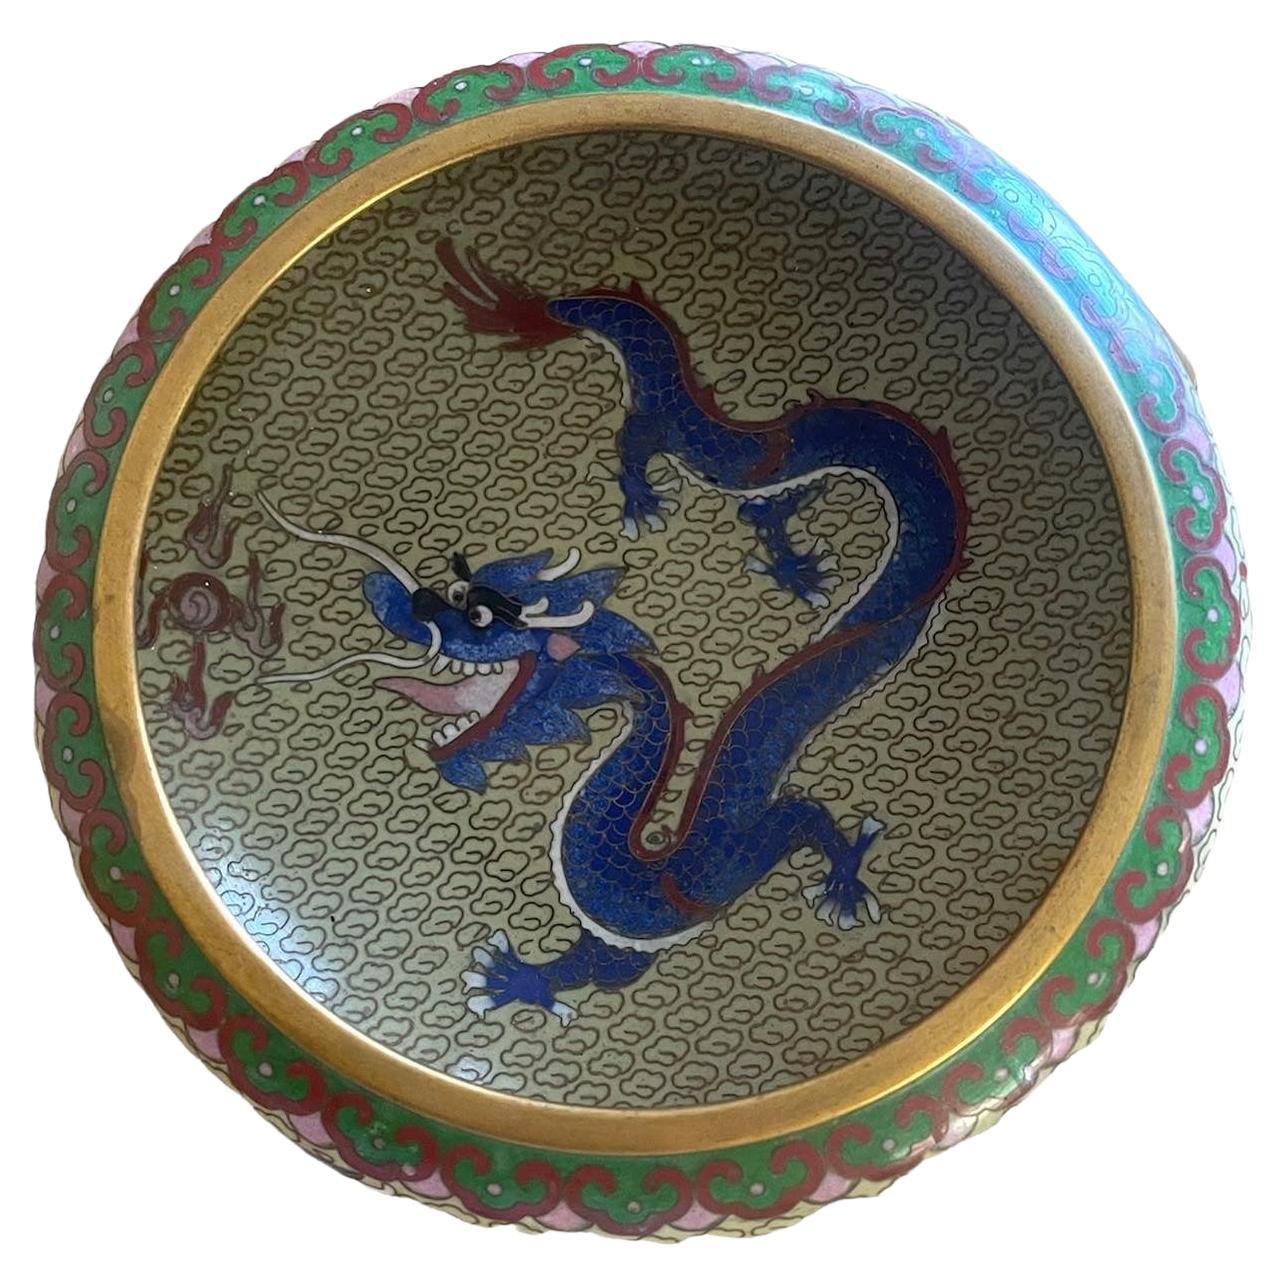 Bol cloisonné chinois dragon début 20ème siècle dragon bleu turquoise. Il pourrait s'agir d'une représentation de la dynastie Qing, mais je n'en suis pas certain.
Socle inclus.